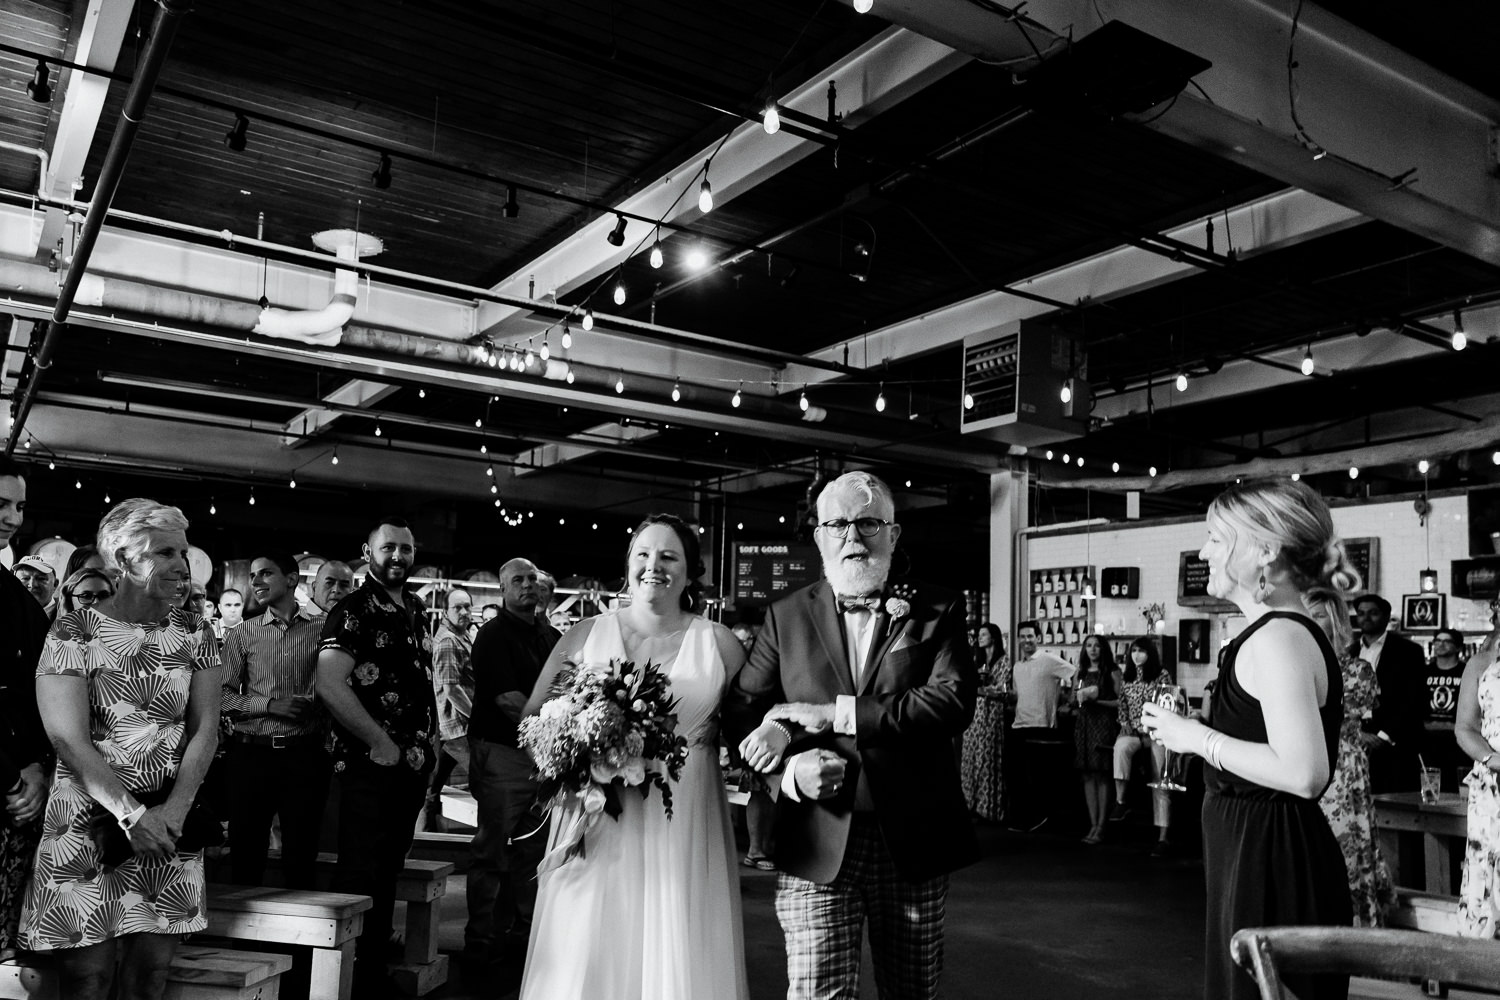 wedding processional at Portland Maine brewery wedding